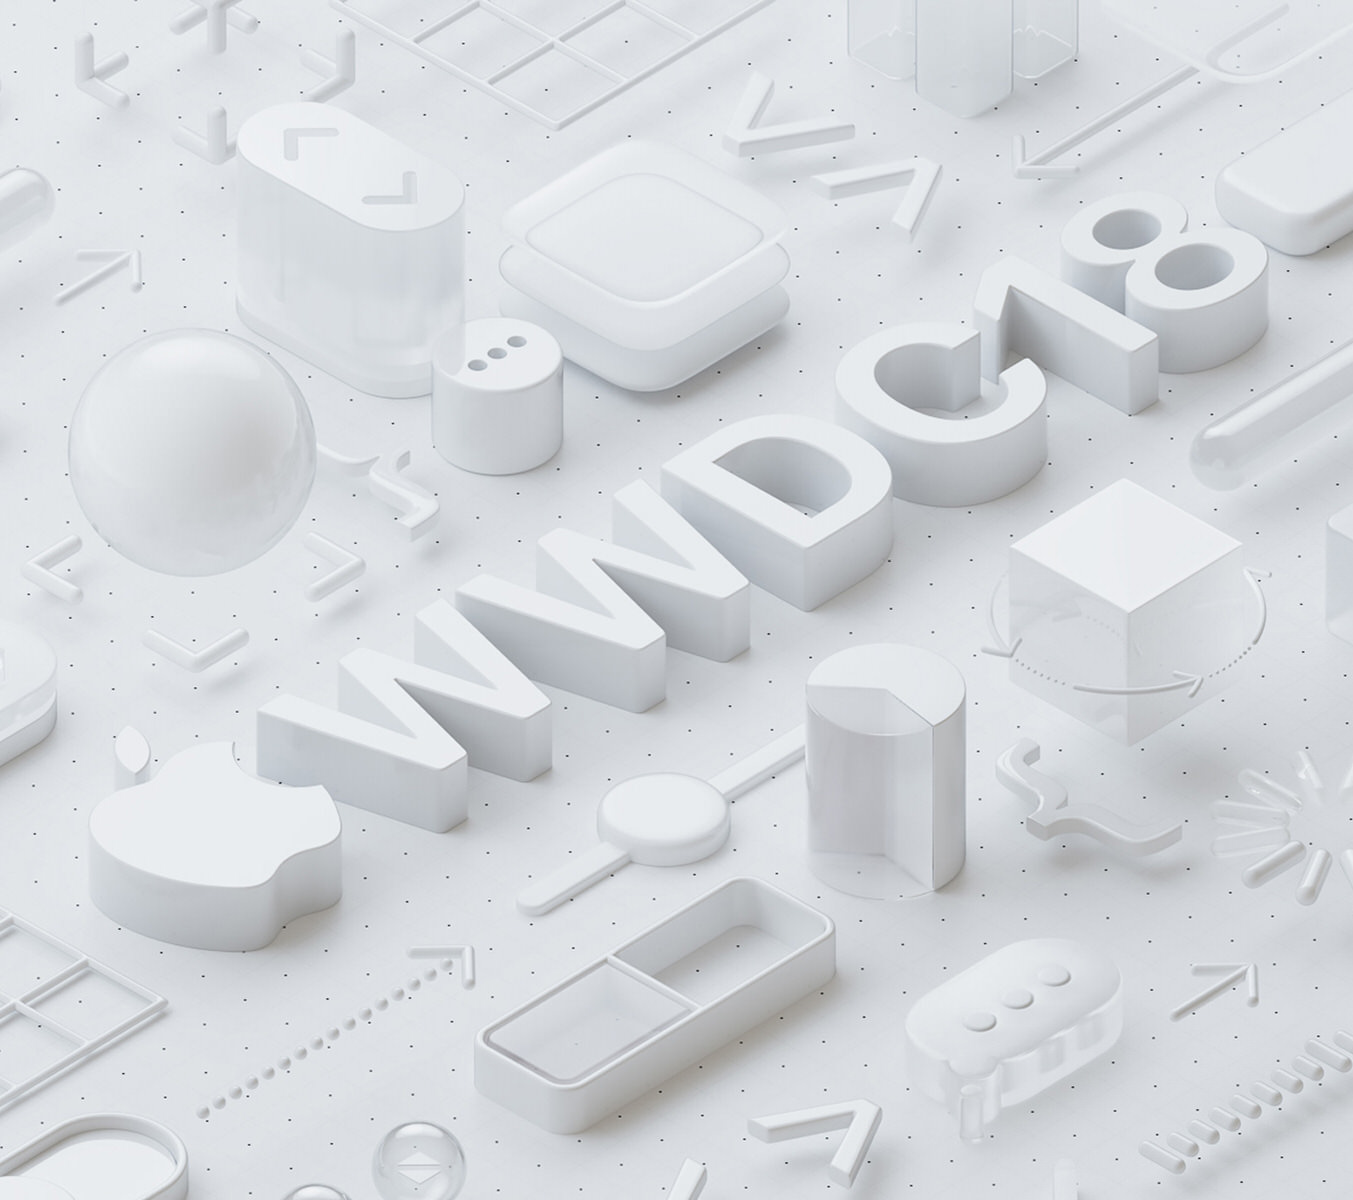 Apple「WWDC2018」を6月4日から開催と発表、新型iPadの発表など予測